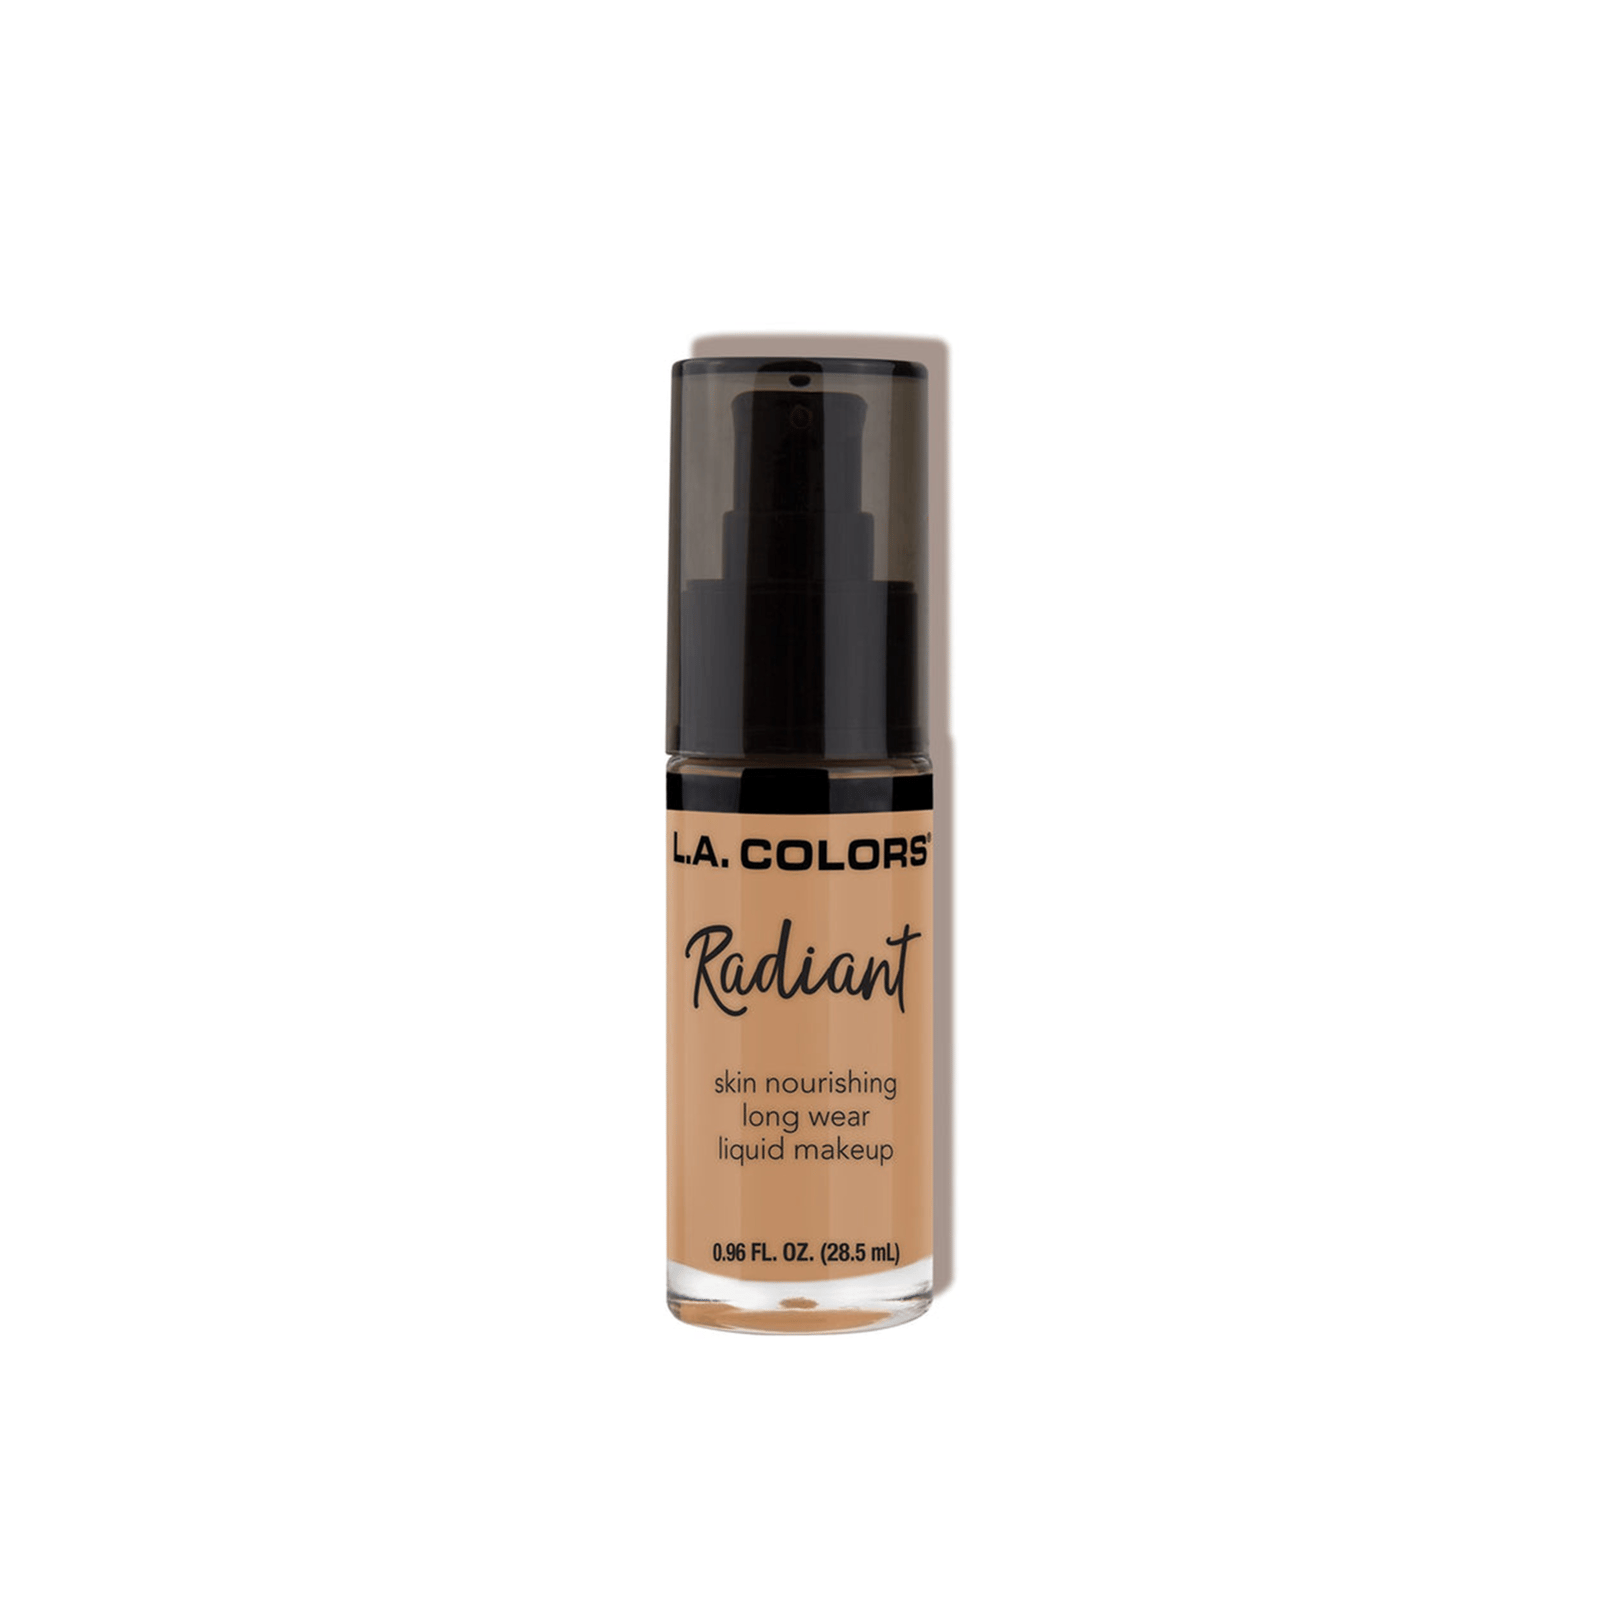 L.A. Colors Radiant Liquid Makeup Foundation CLM391 Suede 28.5ml